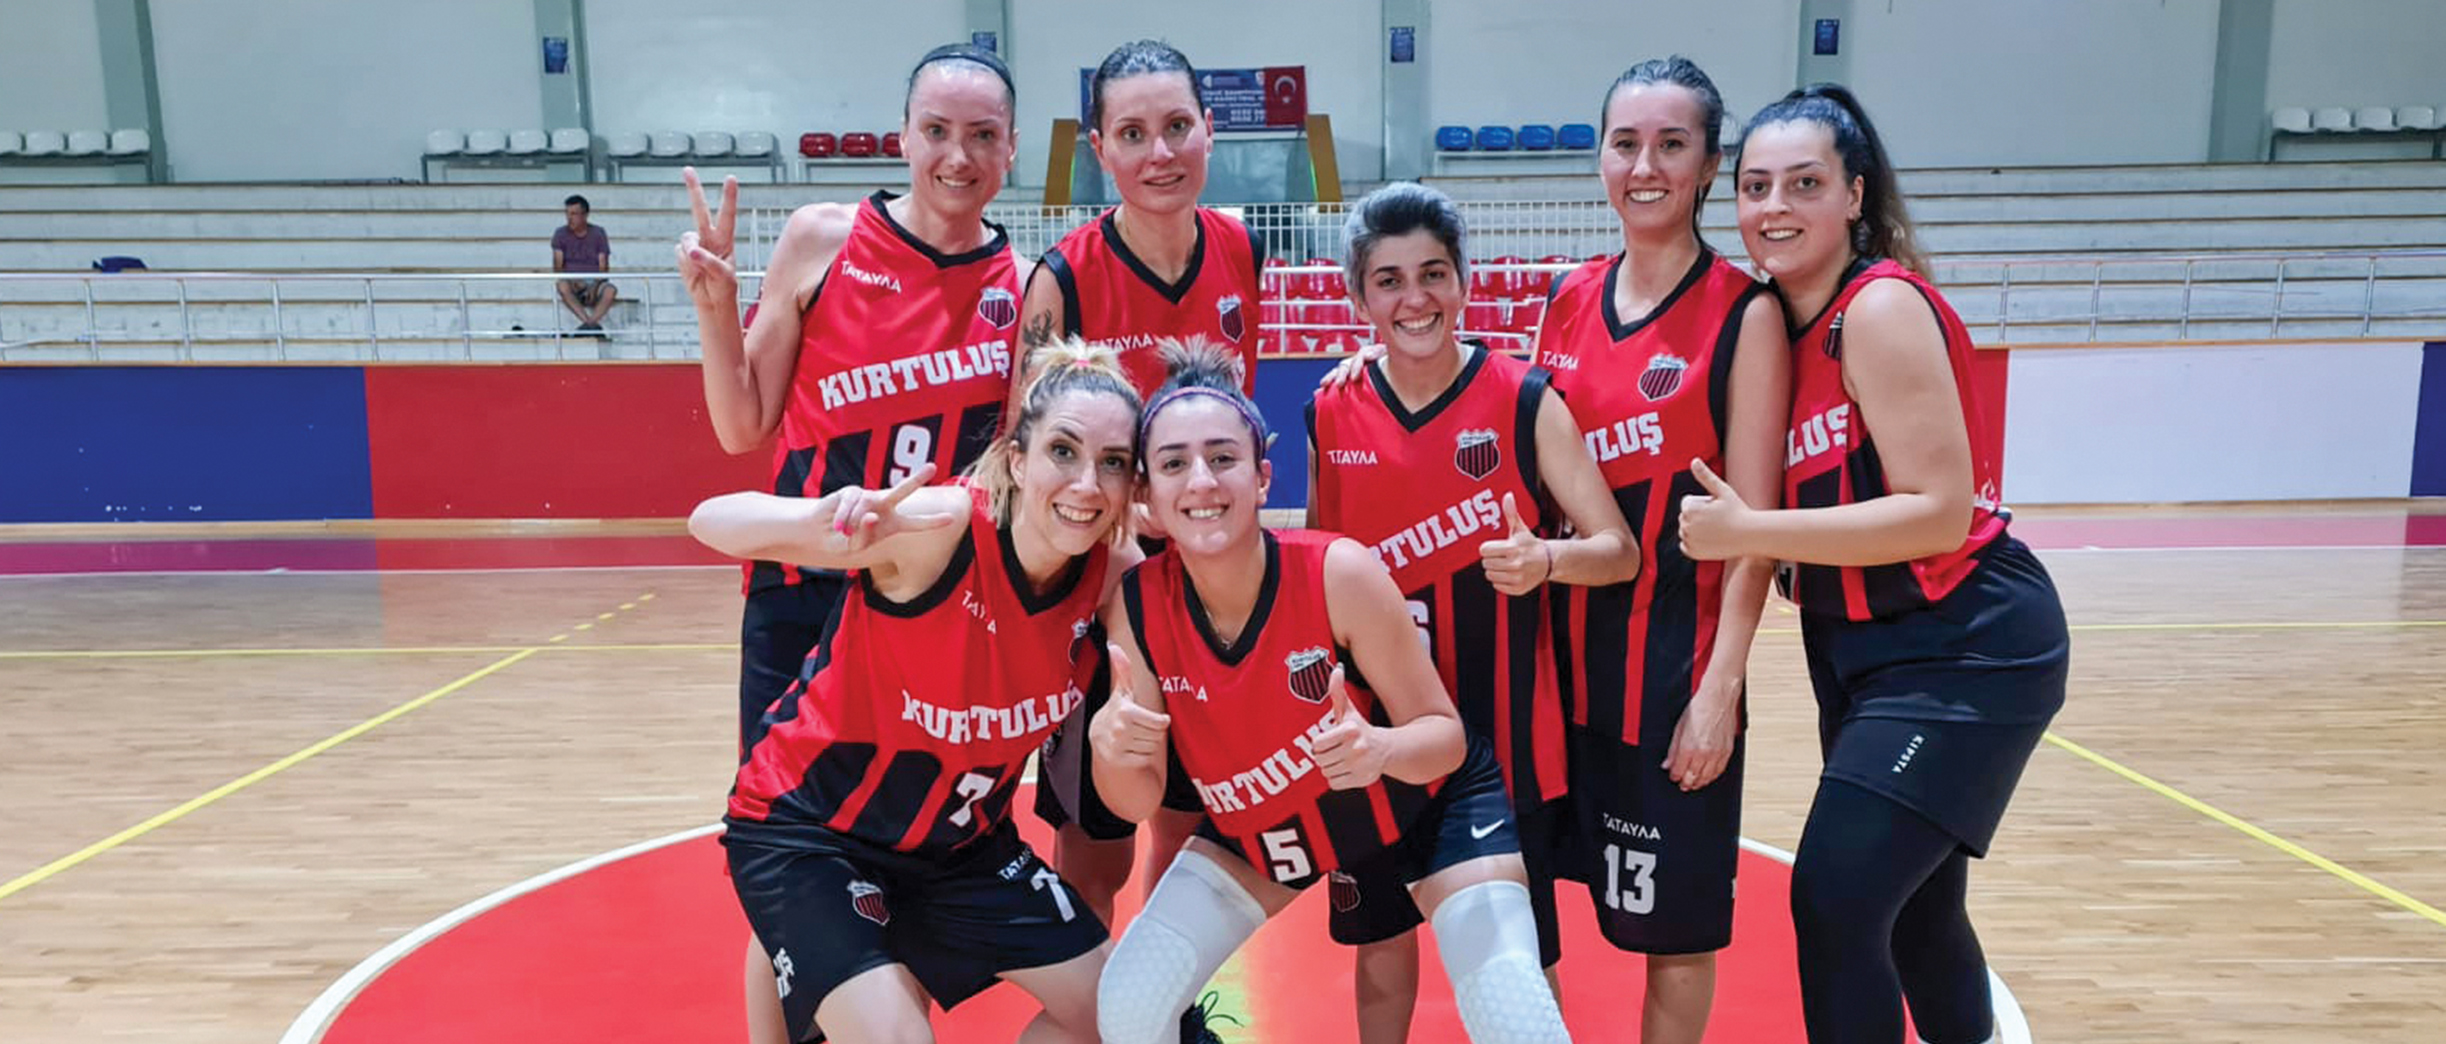 Kadın Basketbol Takımı, Kurtuluş Spor Kulübü’ne bir kupa daha kazandırdı